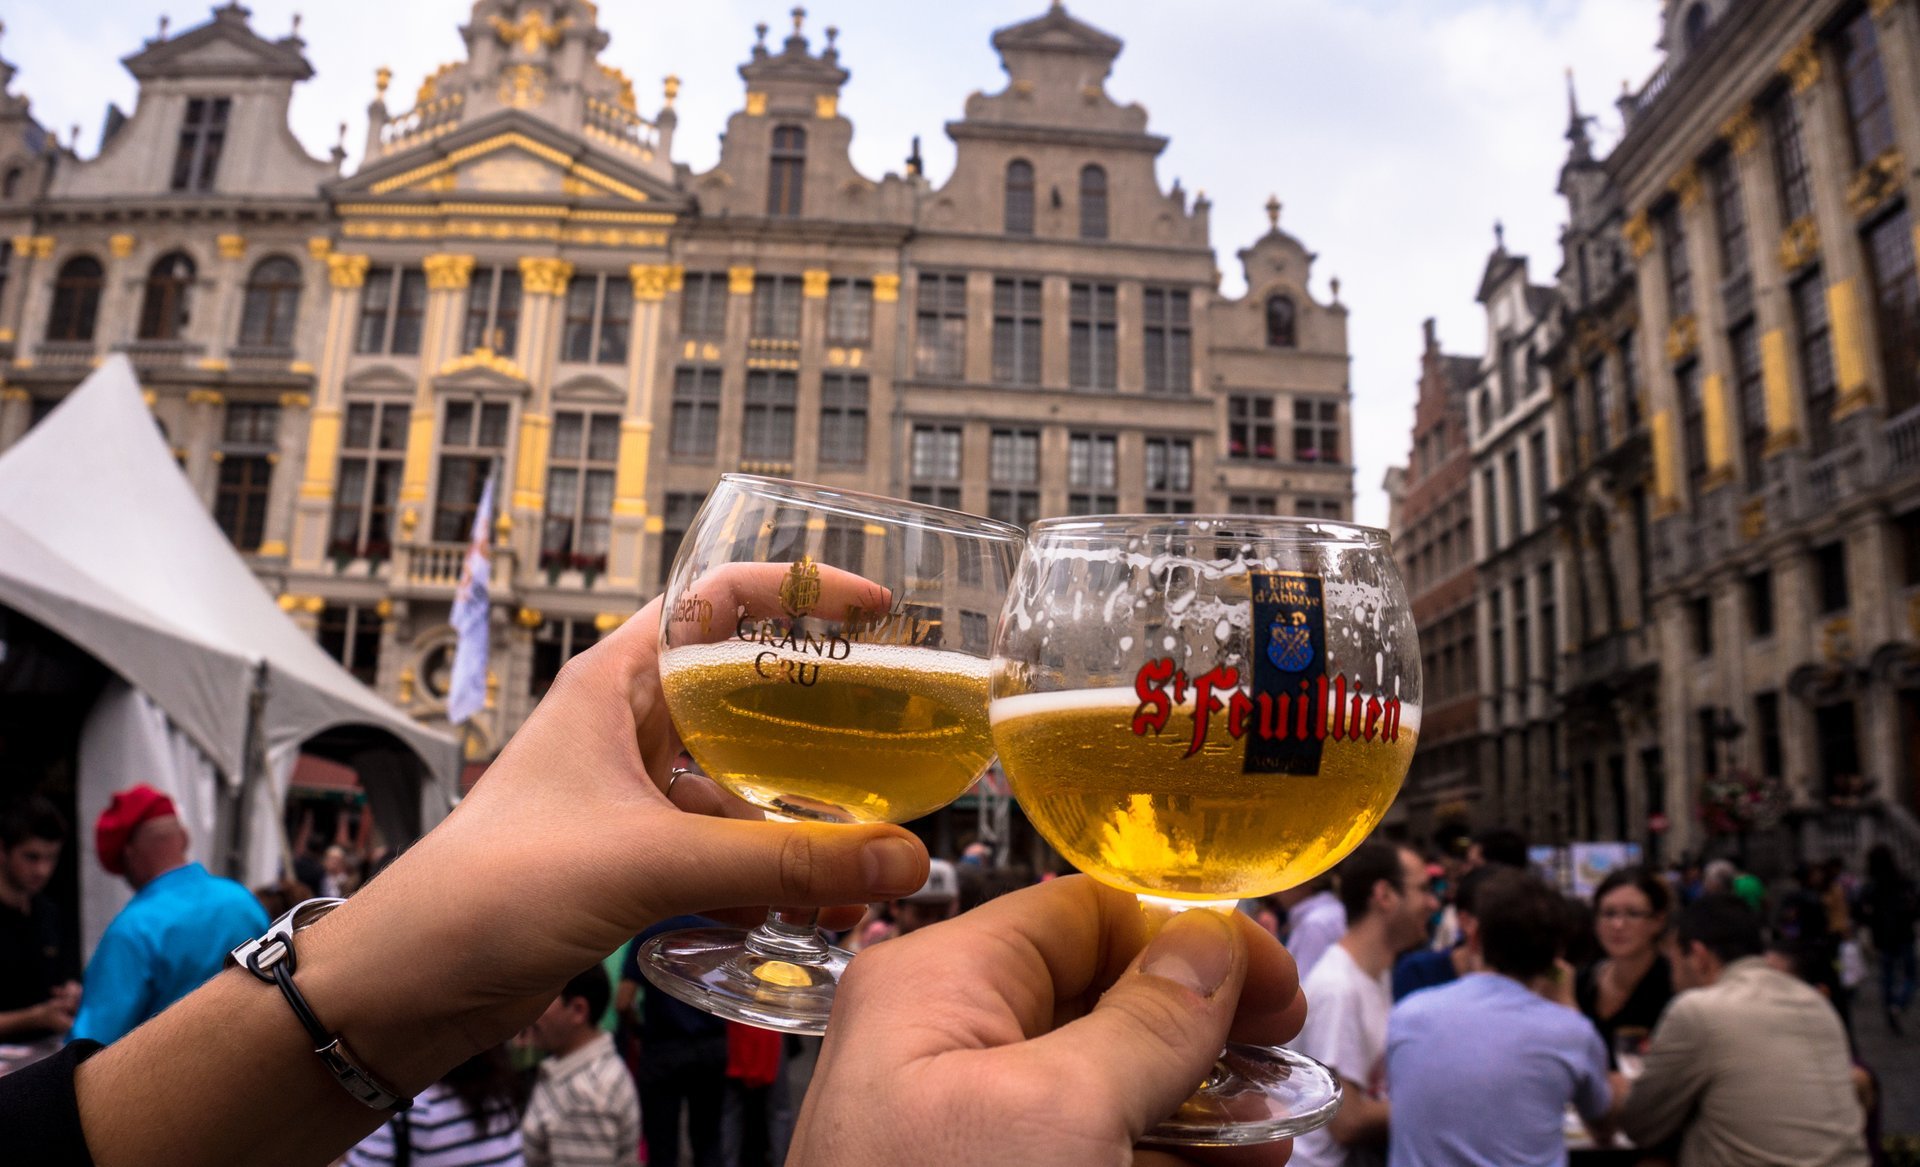 belgium beer brewery tours